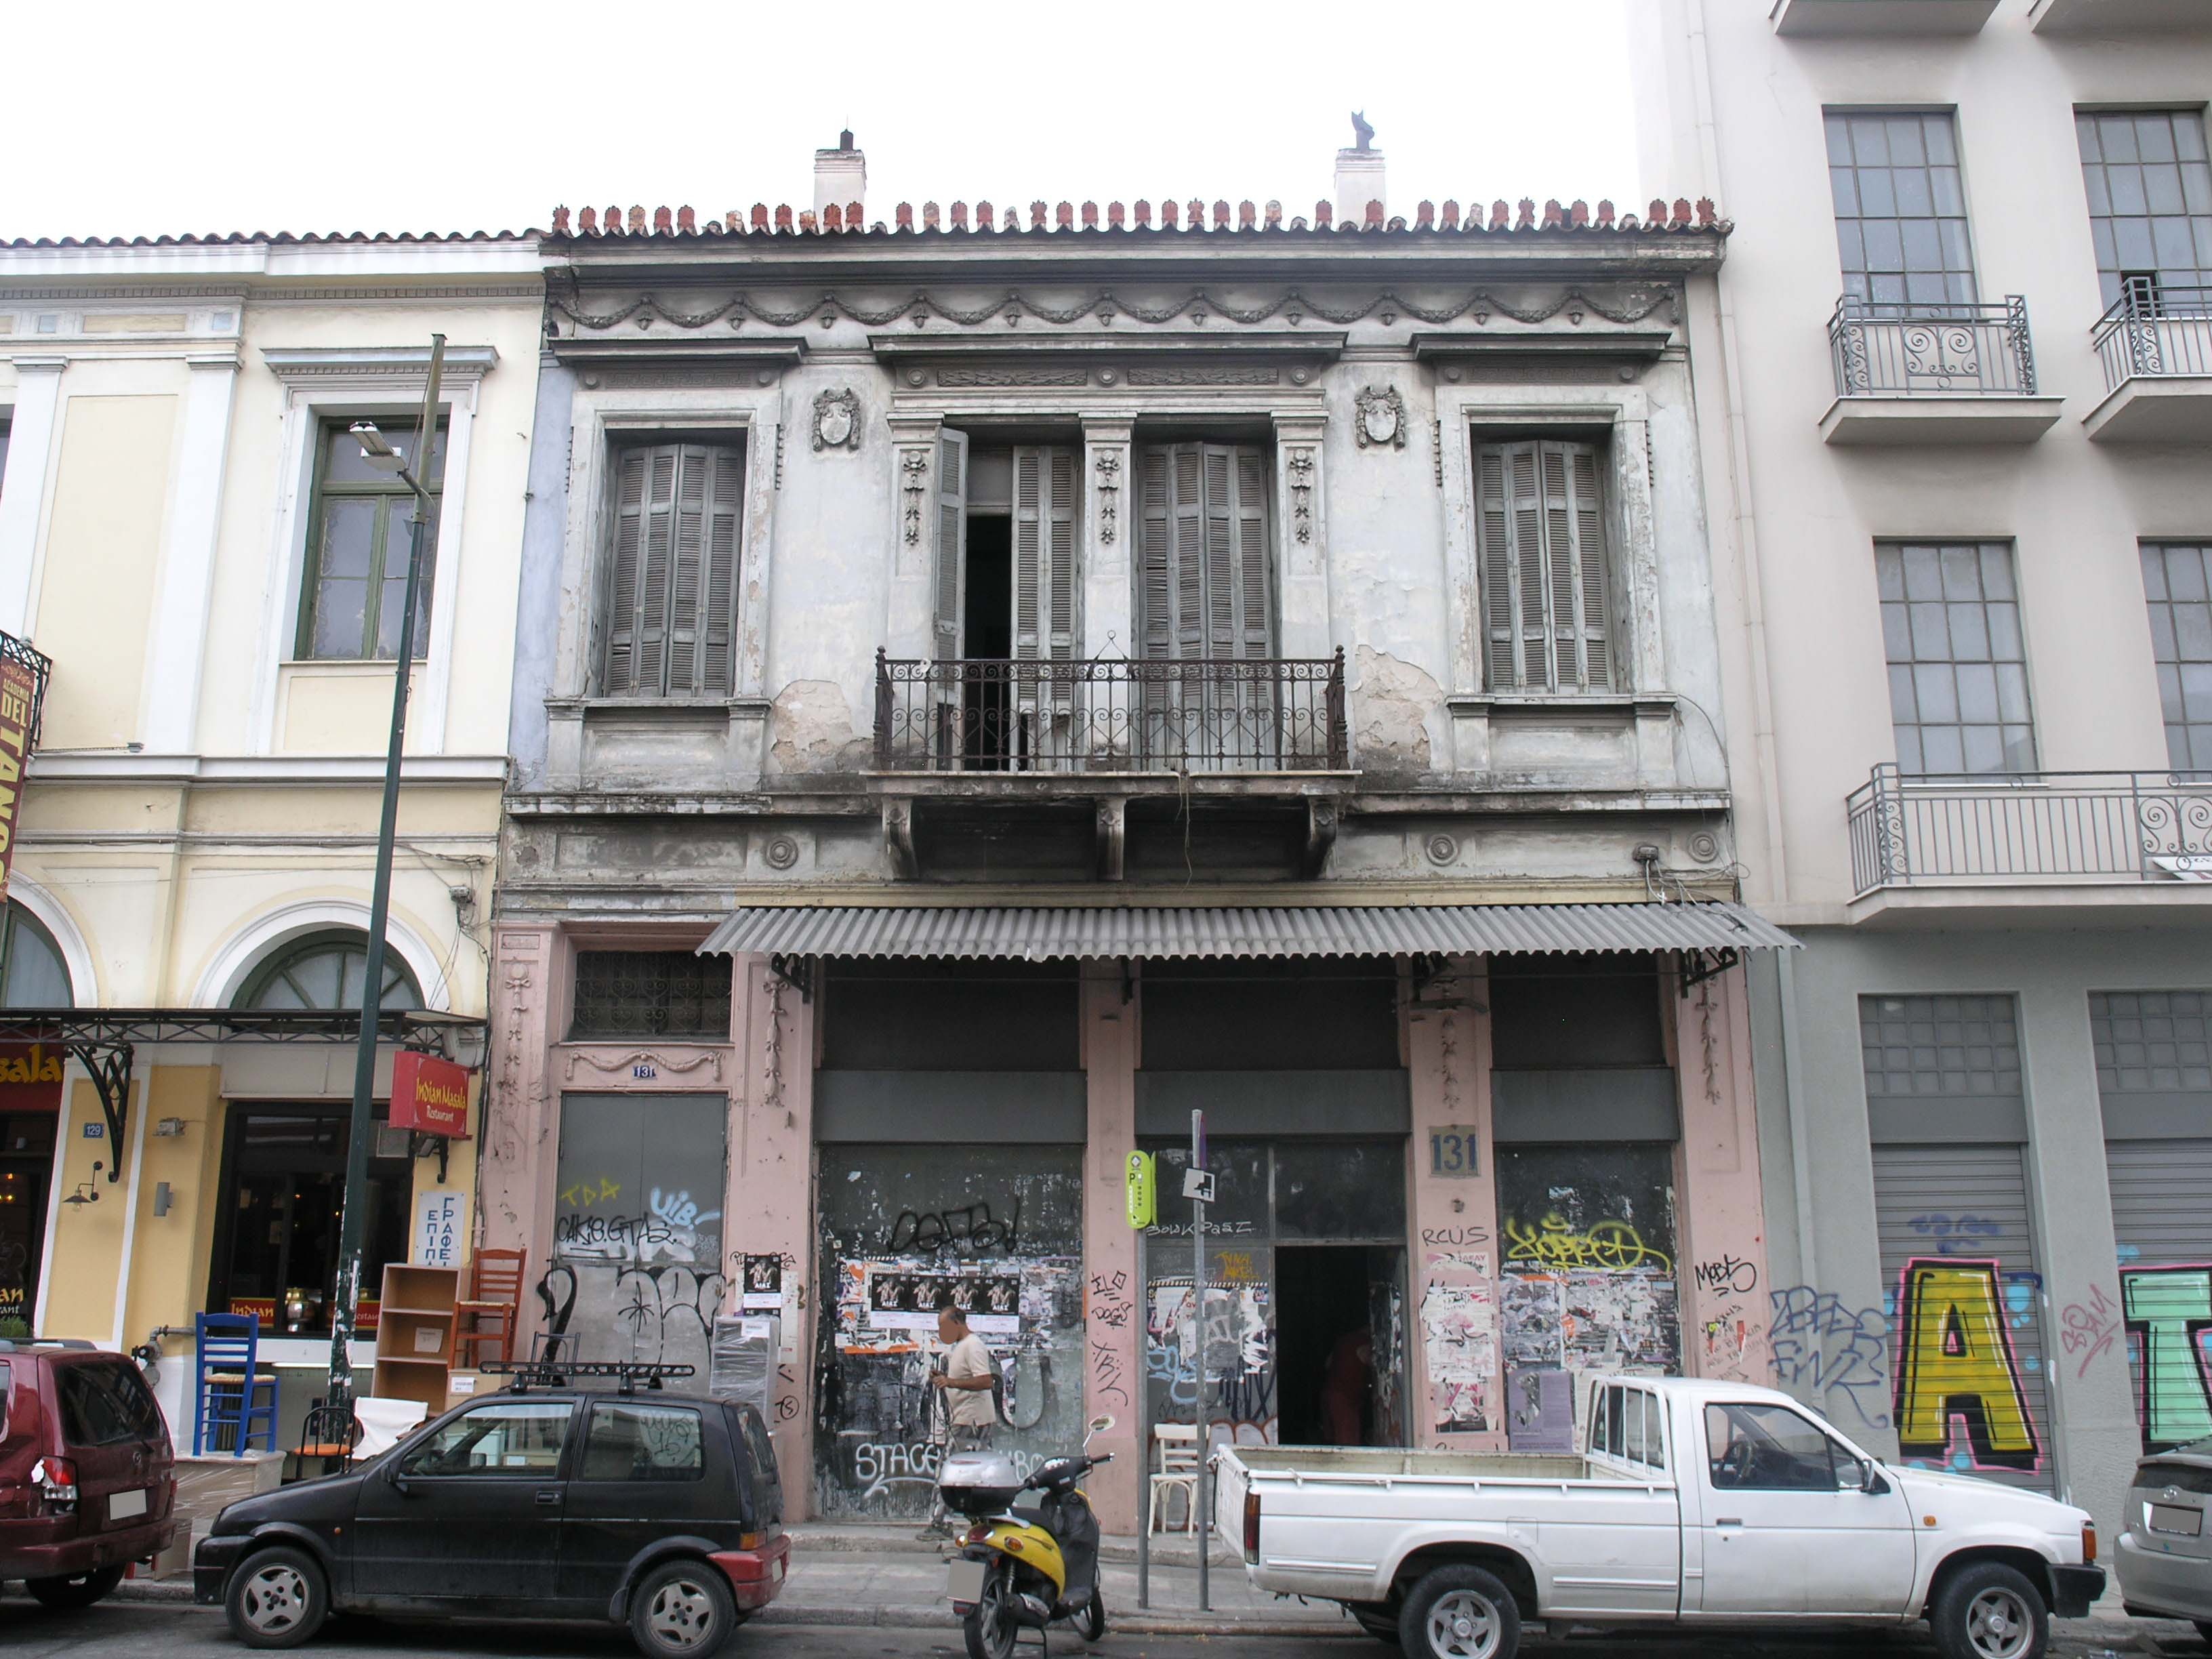 View of the main façade